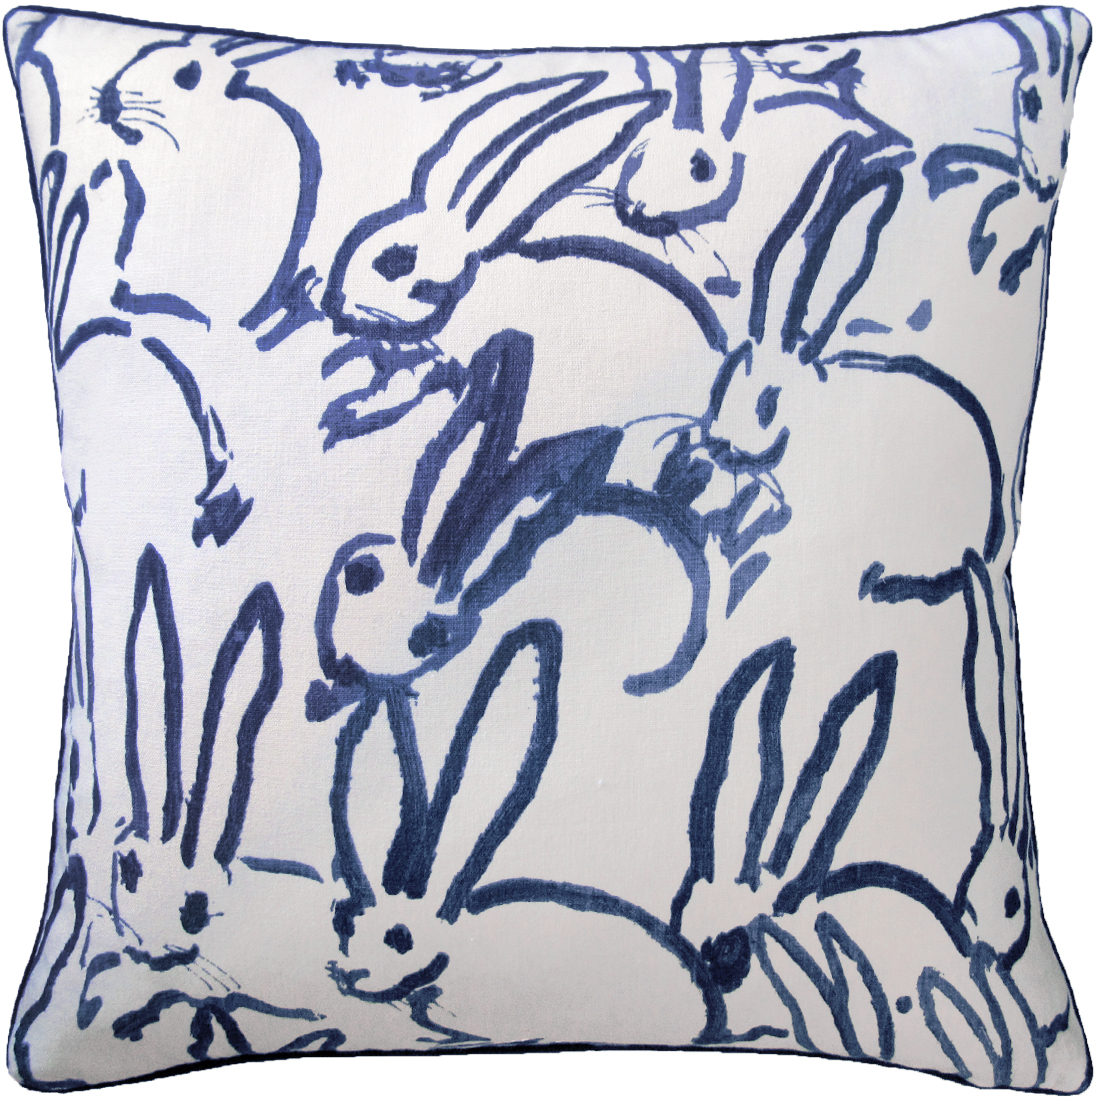 Bunnies Navy Pillows-$298.00